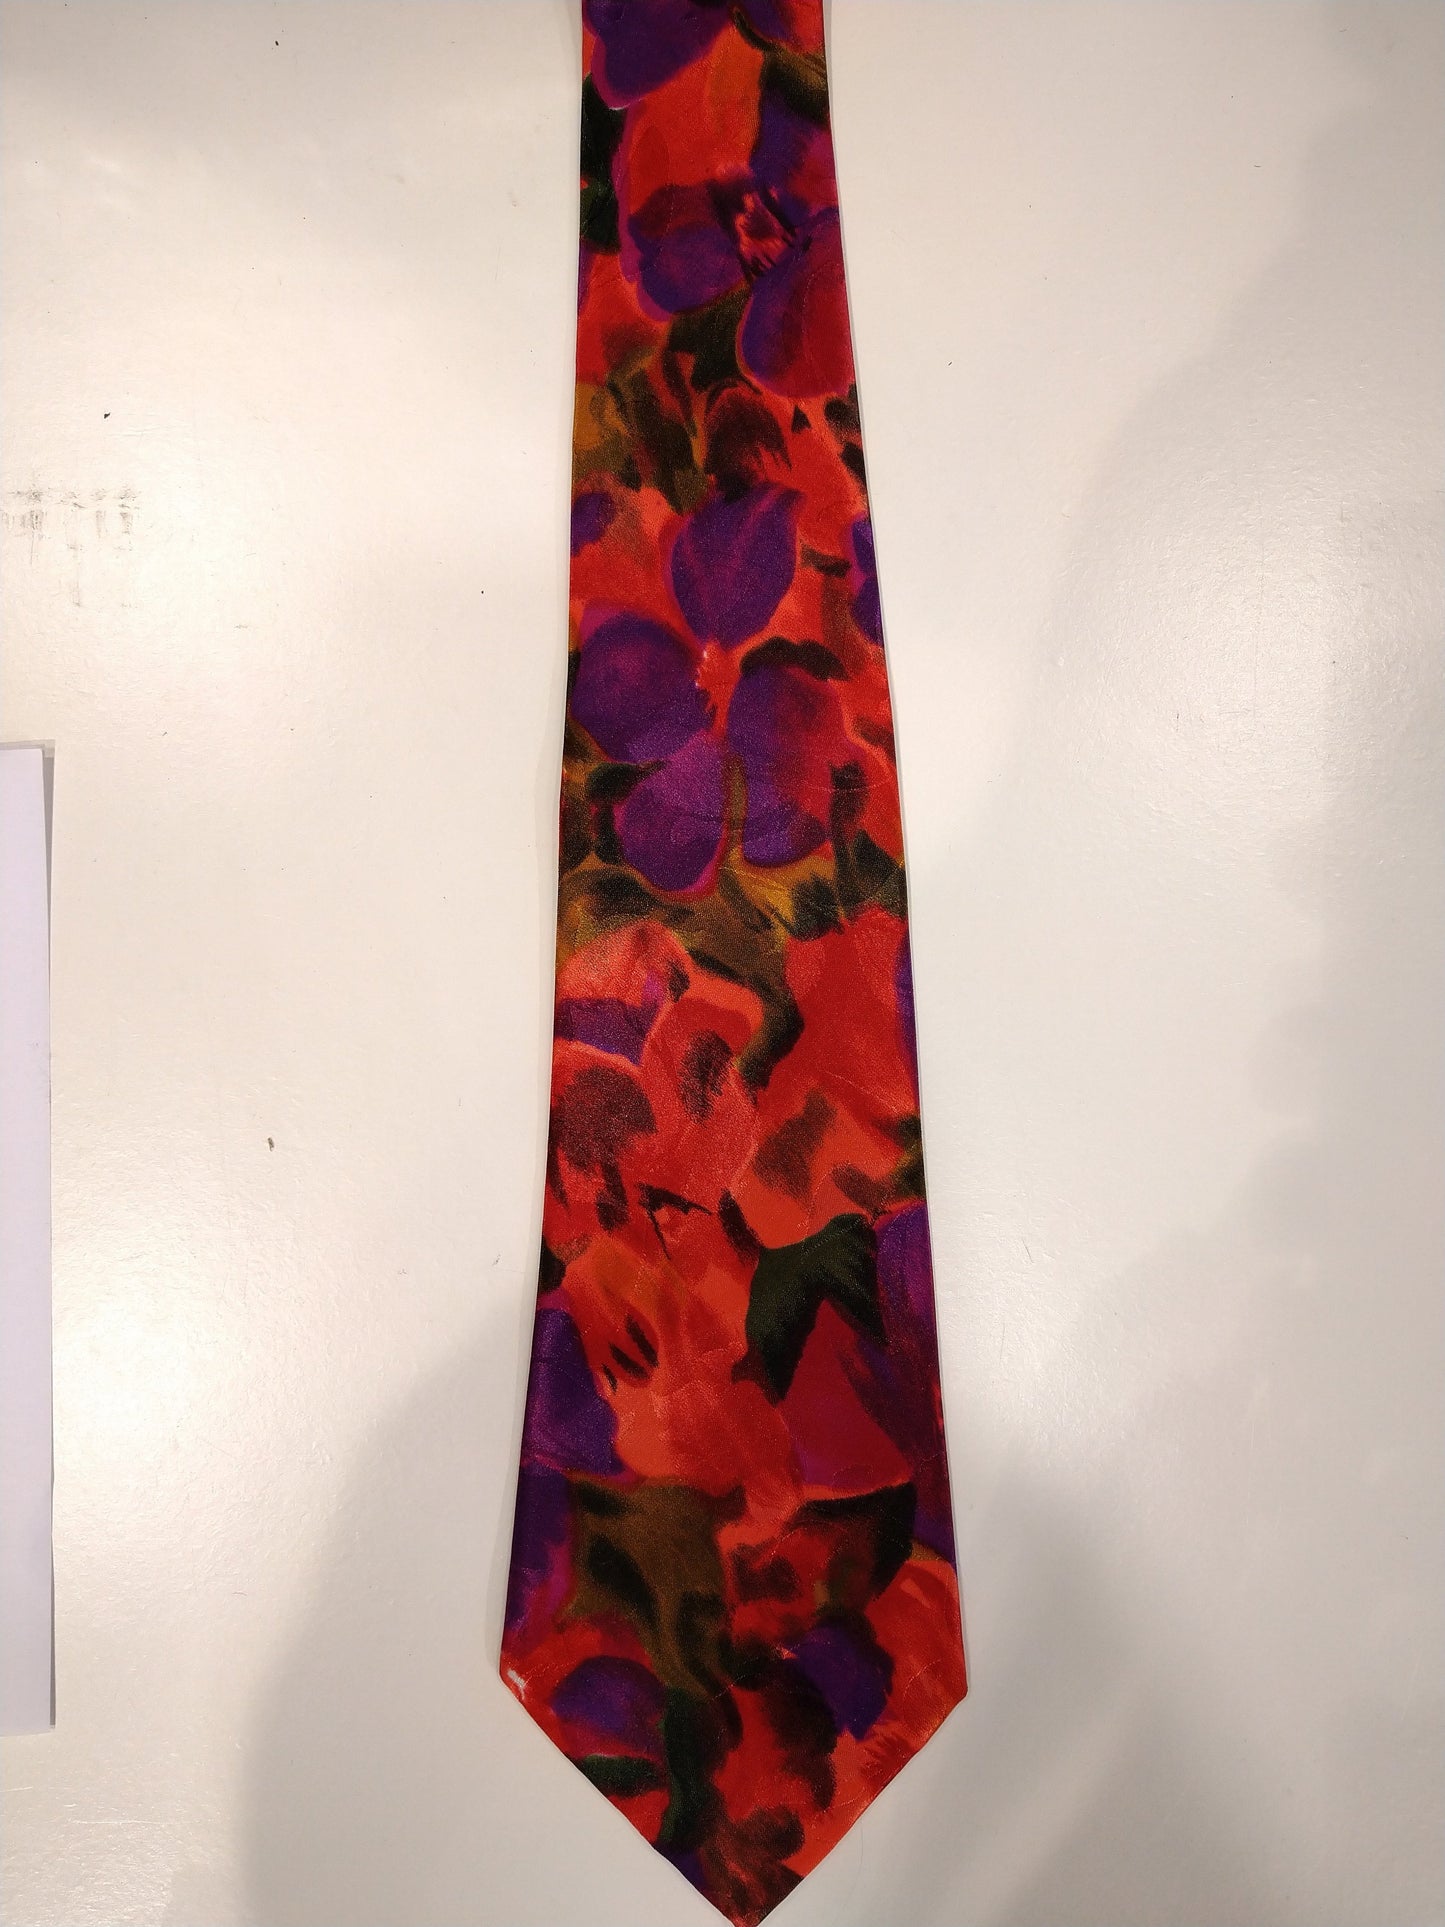 Peachick hecho a mano la corbata de poliéster. Hermoso motivo floral con brillo metálico separado.